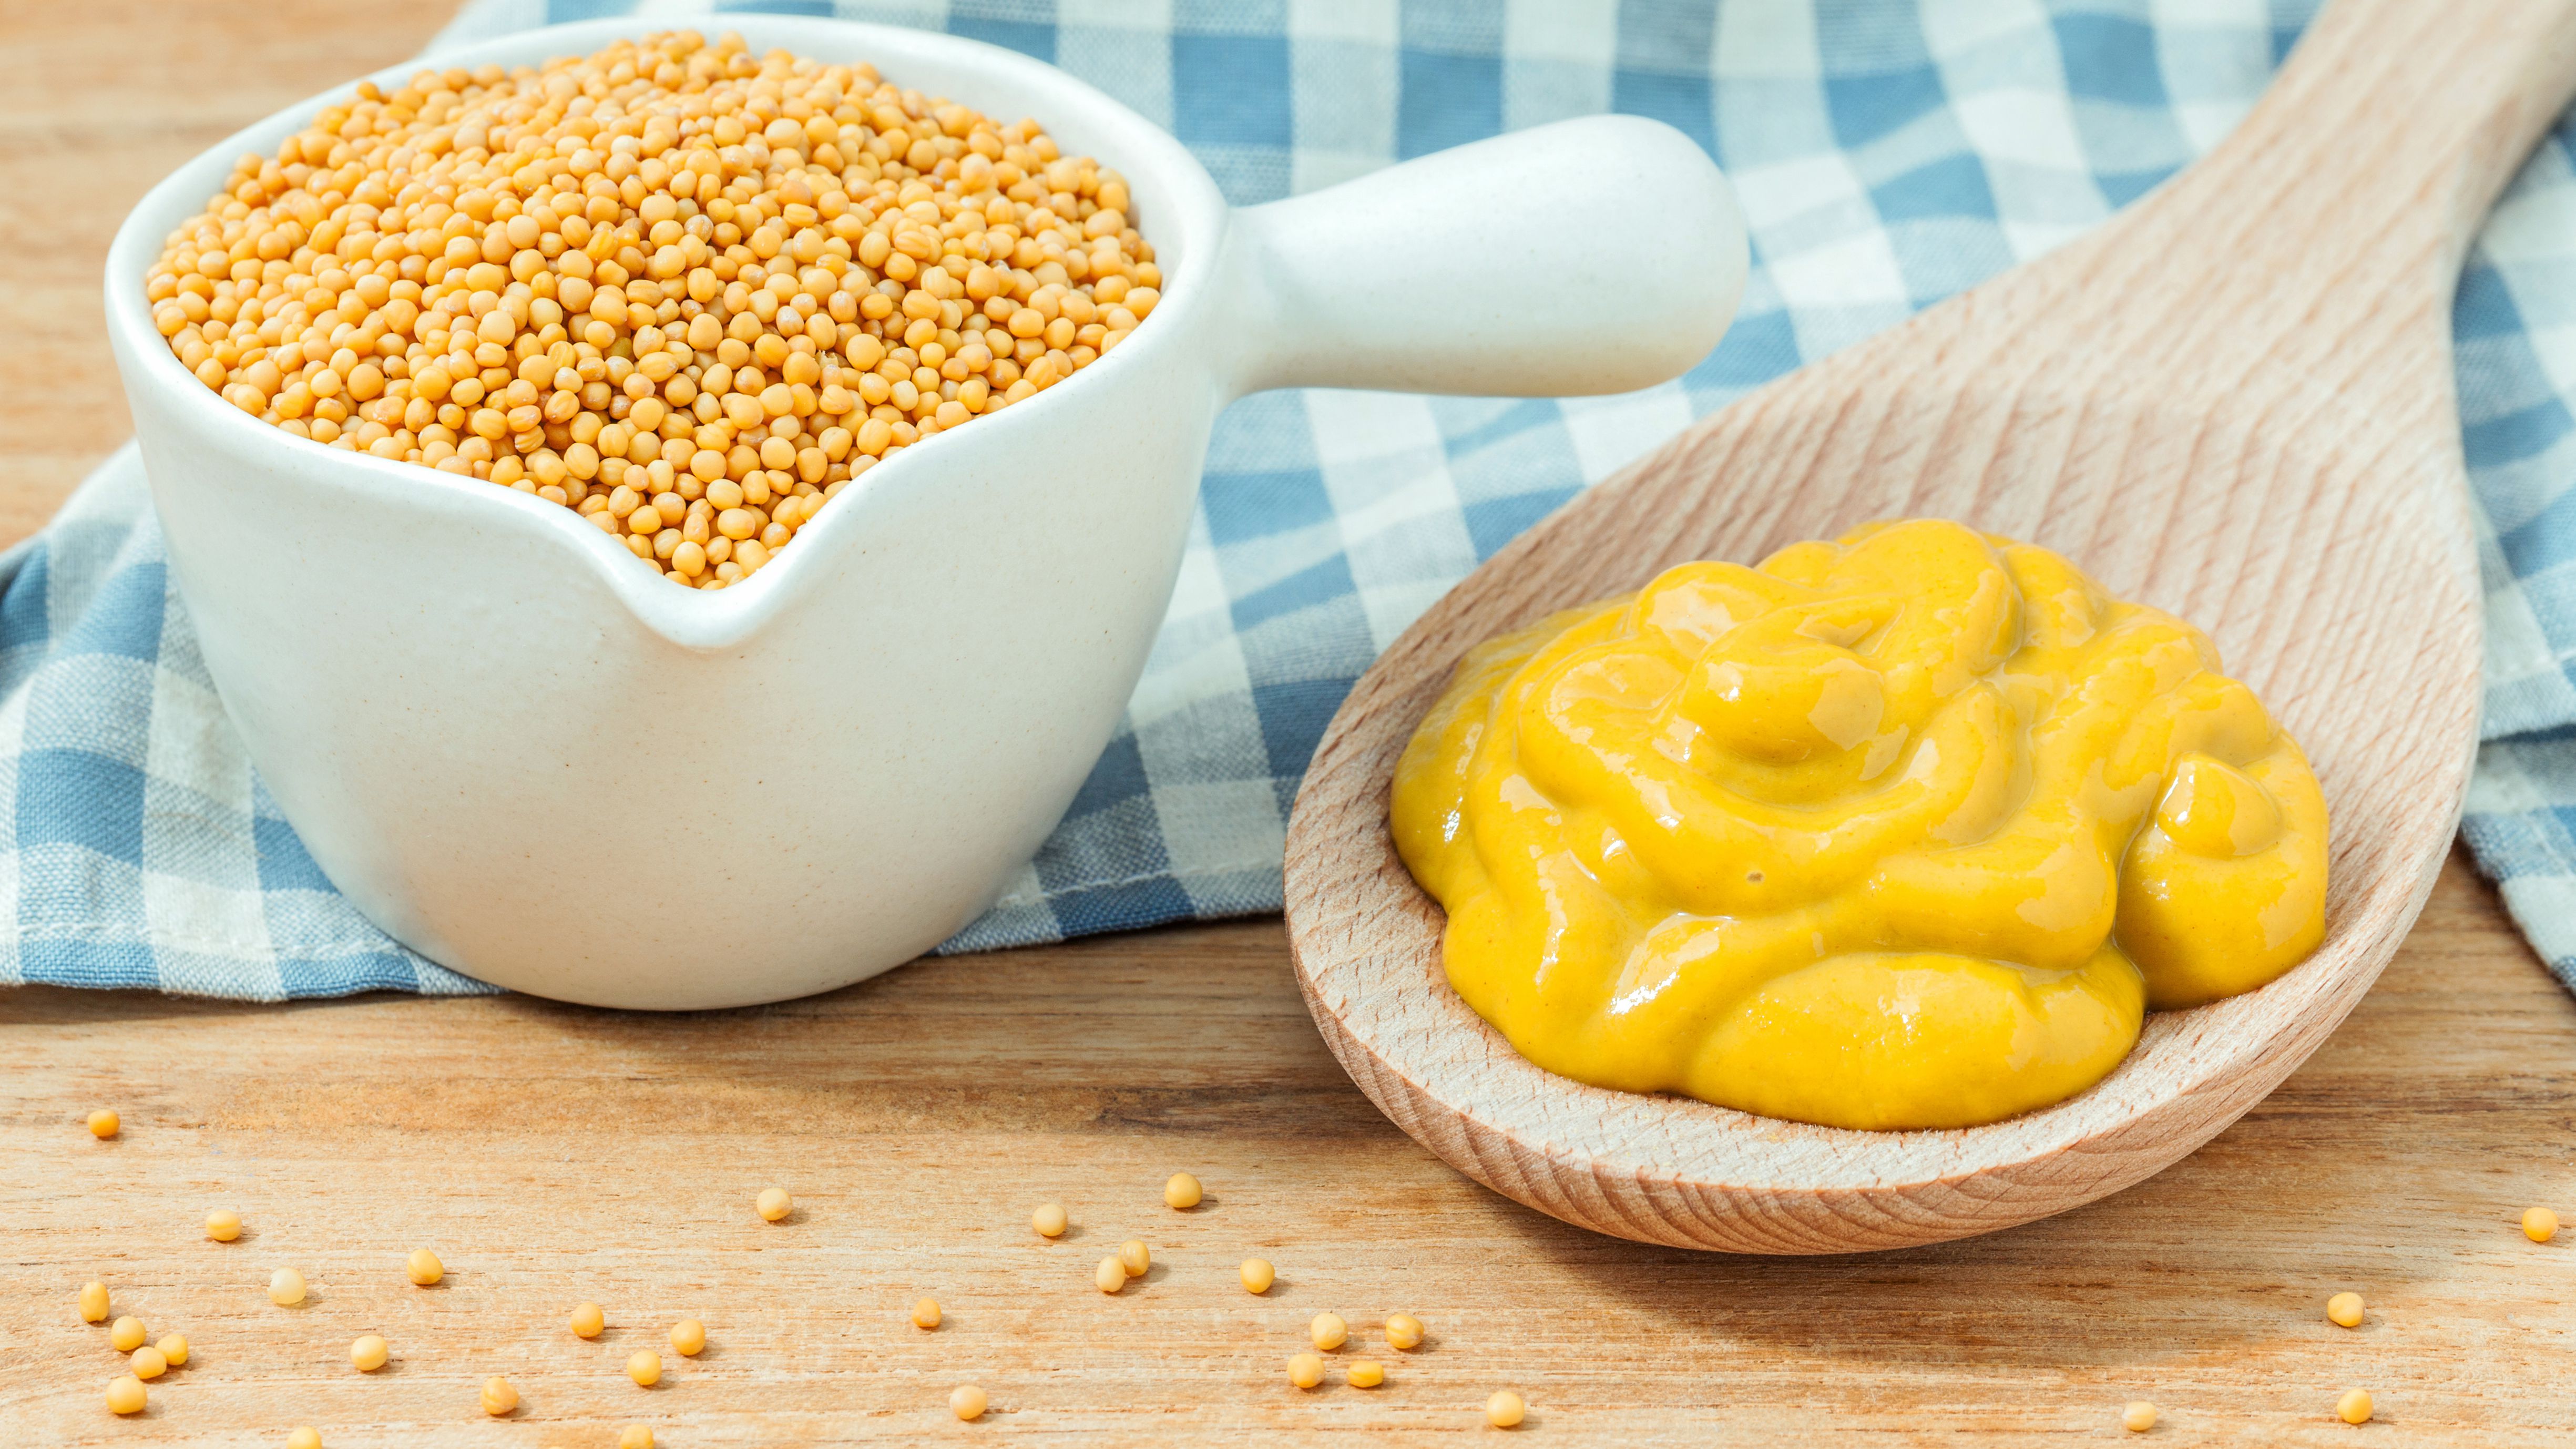 hạt mù tạt vàng thương hiệu hava foodies gói 100g yellow mustard seed 2